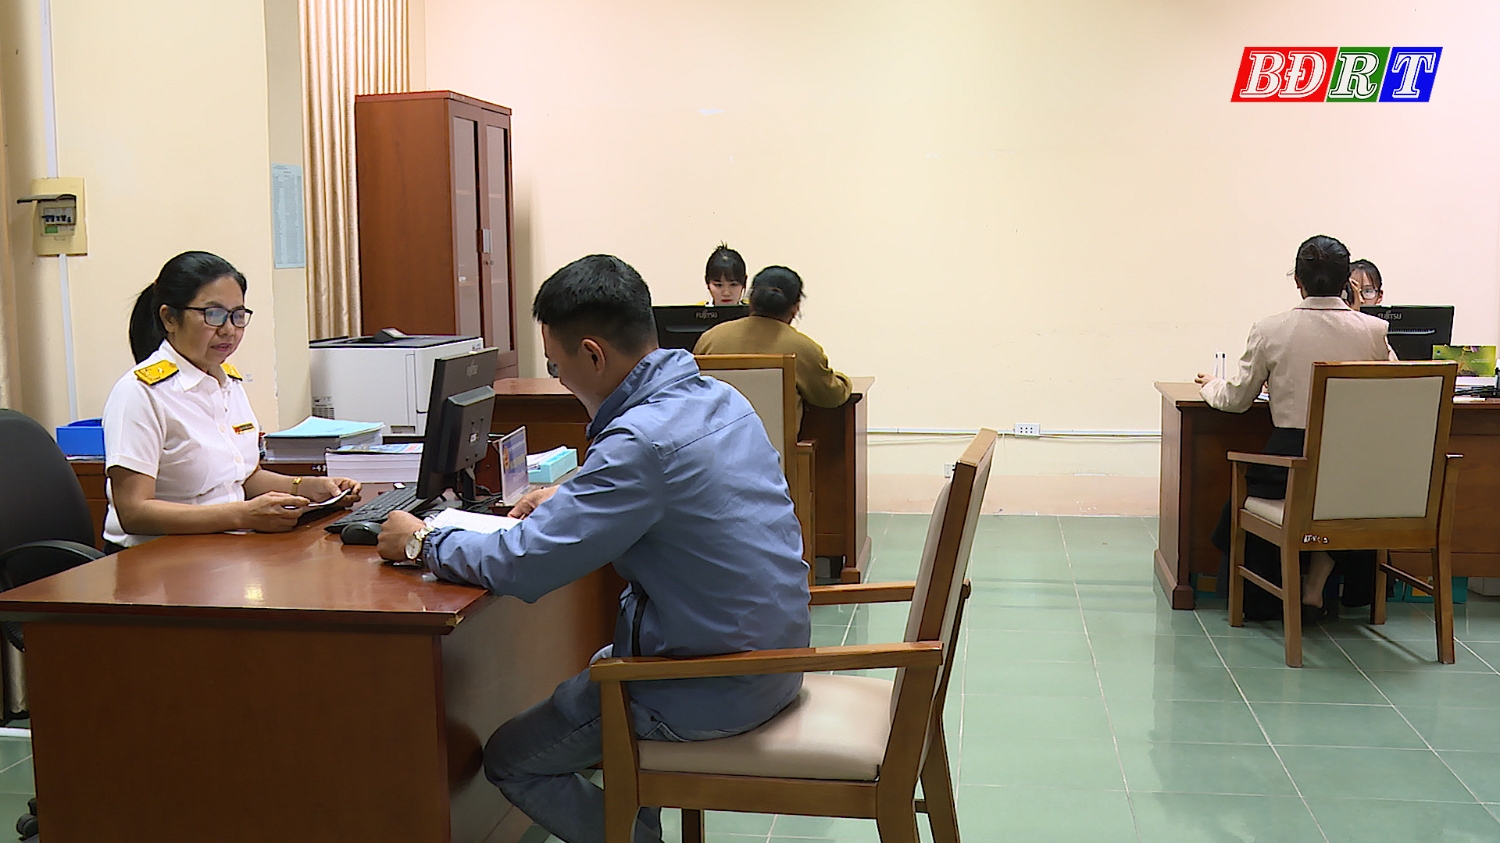 Chi cục Thuế khu vực Quảng Trạch Ba Đồn tiếp nhận và trả kết quả cho người dân